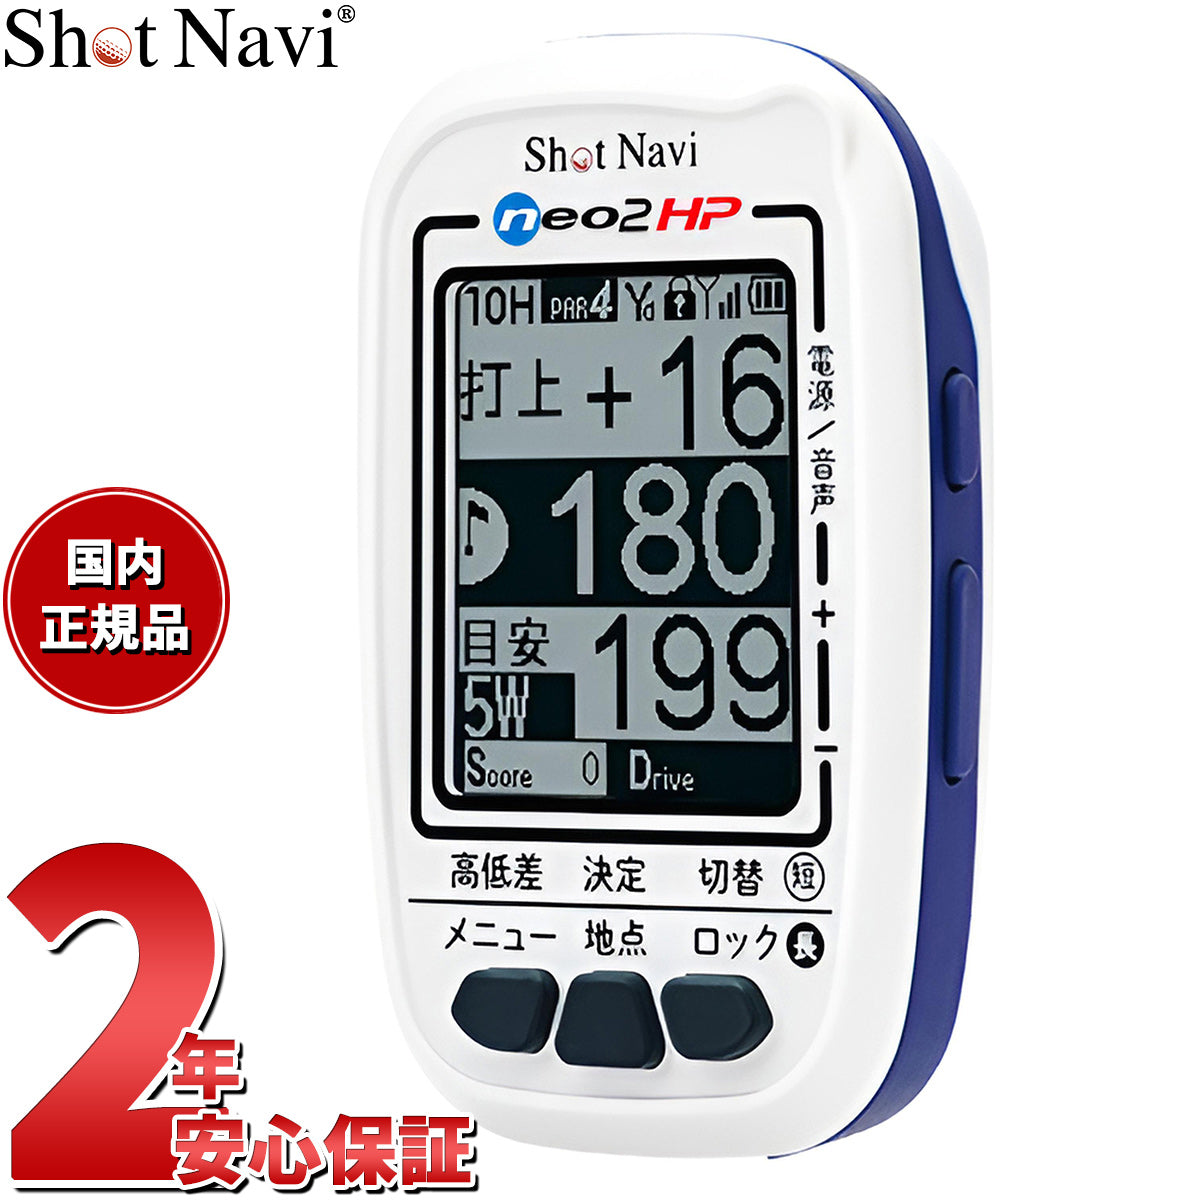 ショットナビ Shot Navi NEO2 HP ネオ2HP ハンディタイプ GPS ゴルフ 